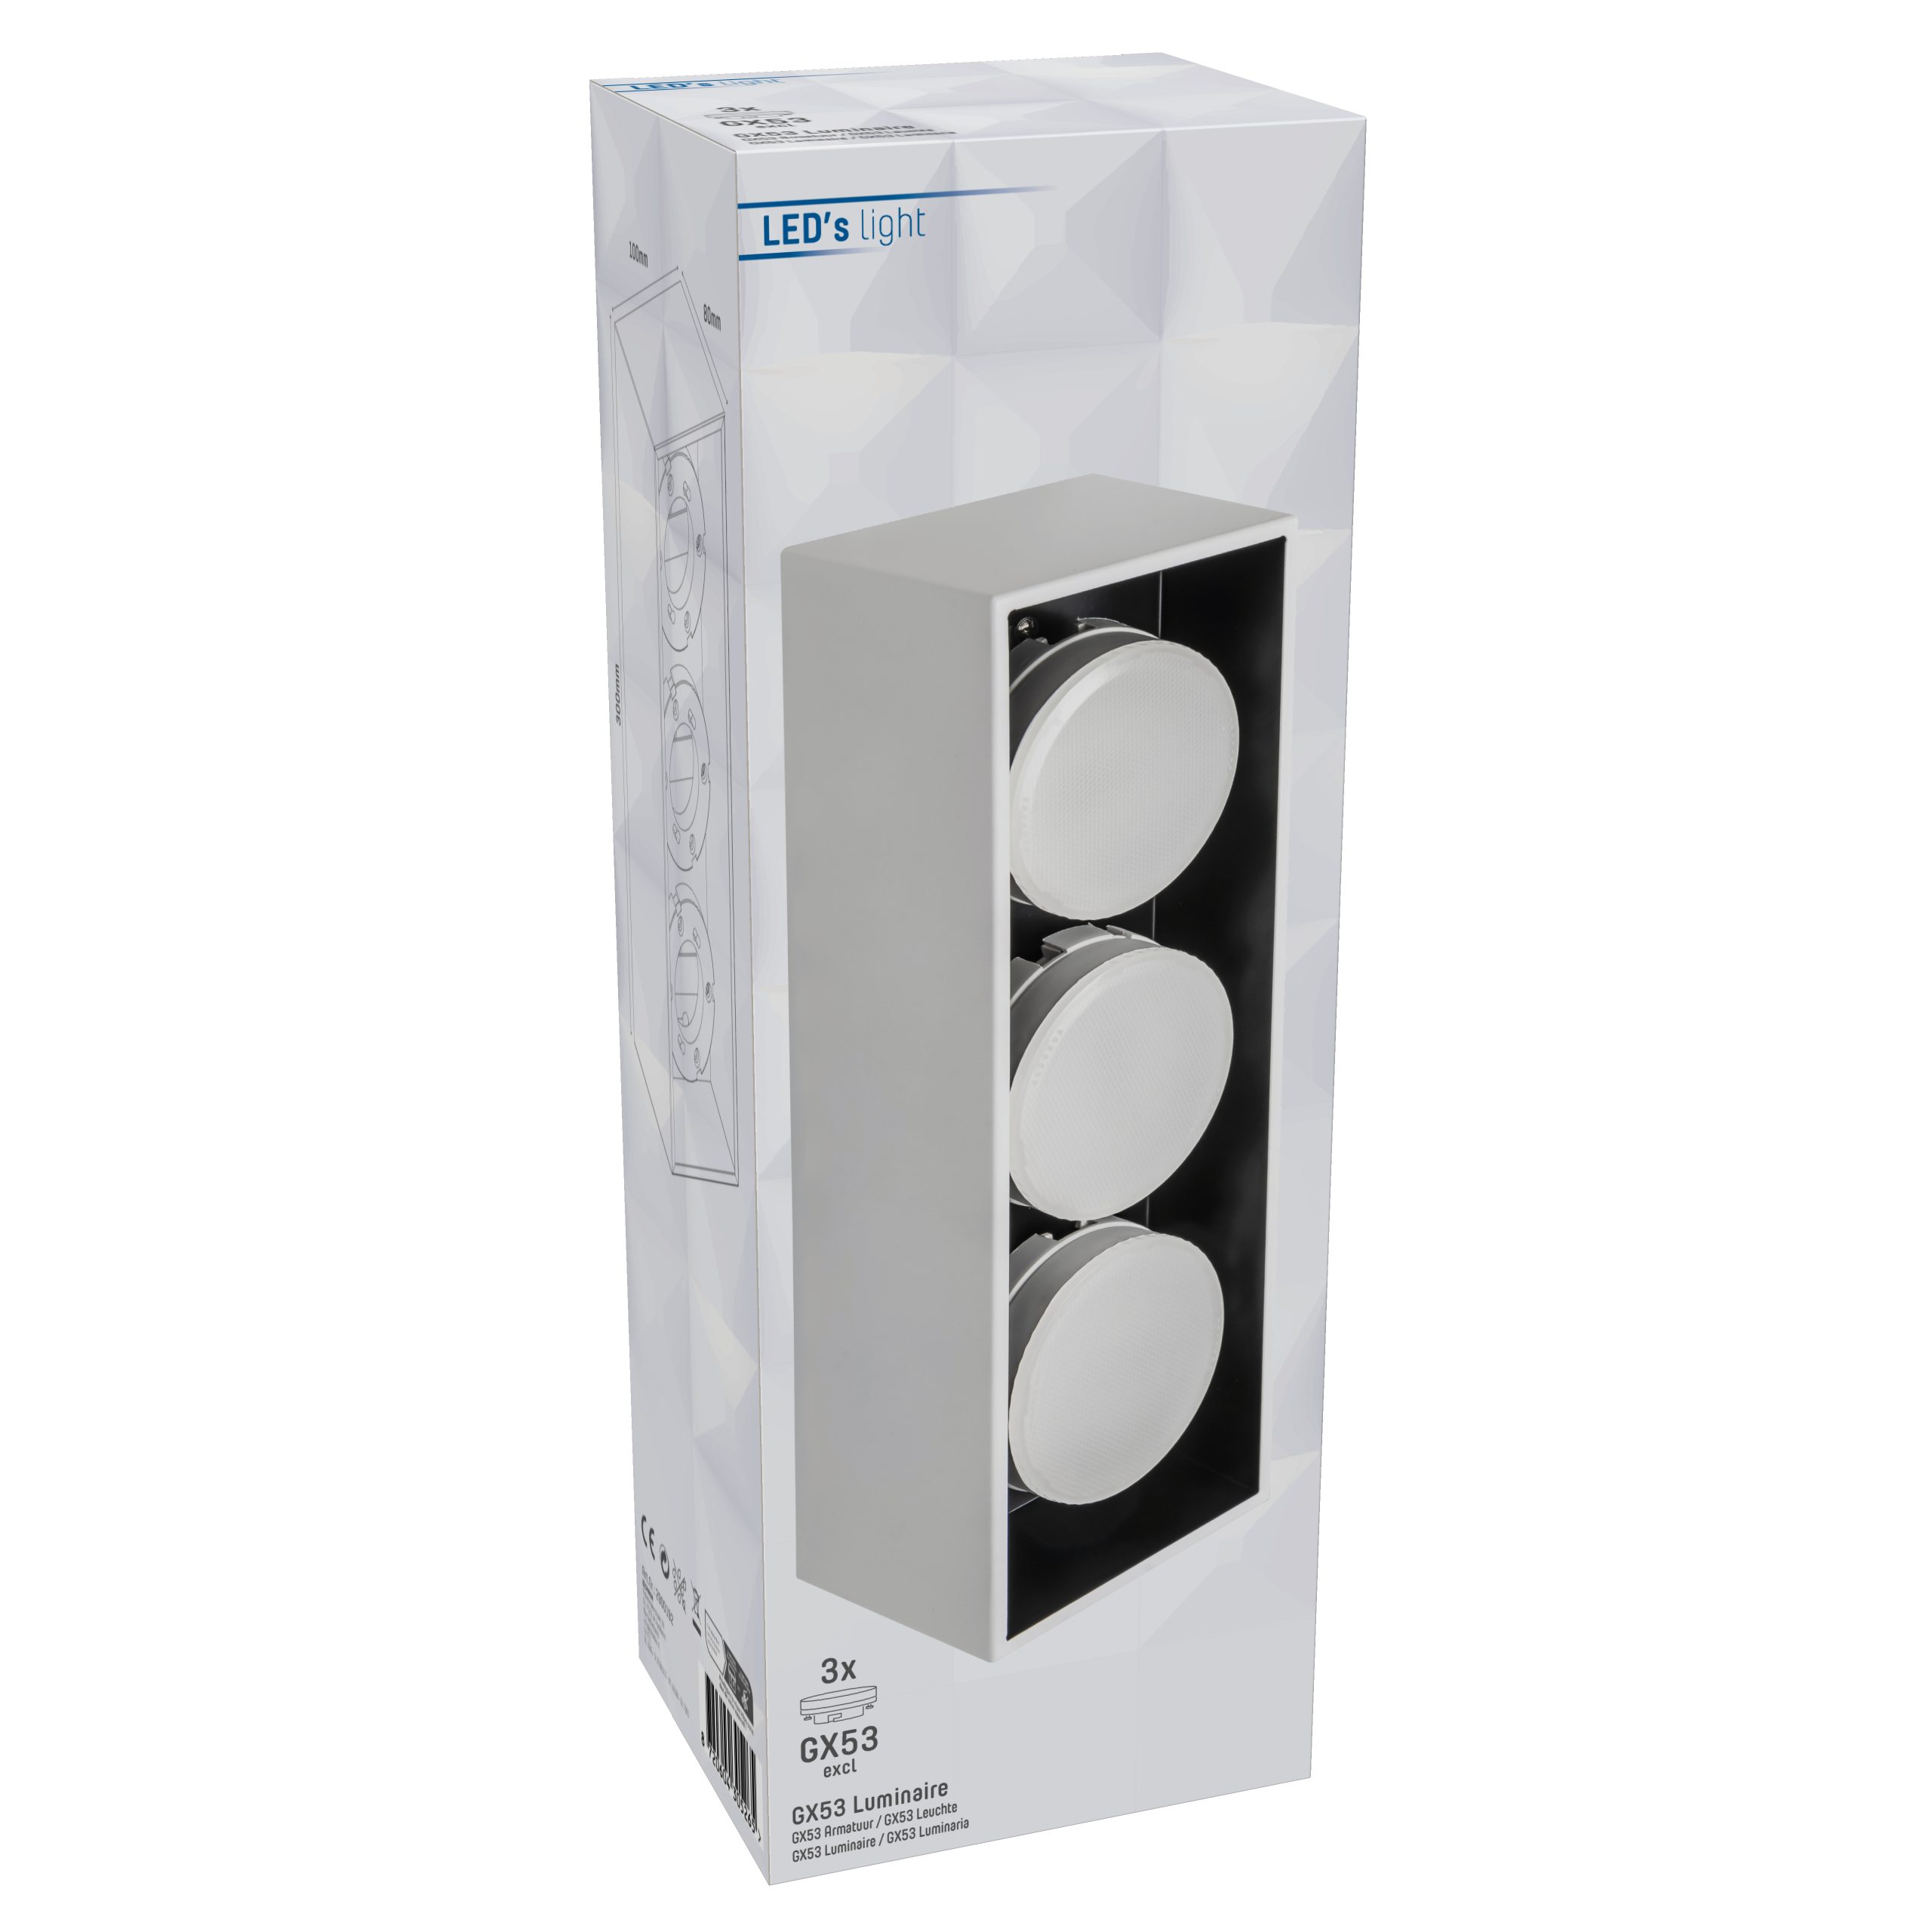 LED, Deckenleuchte, LED GX53 bis 3x weiß 2900192 12W light LED's Deckenleuchte